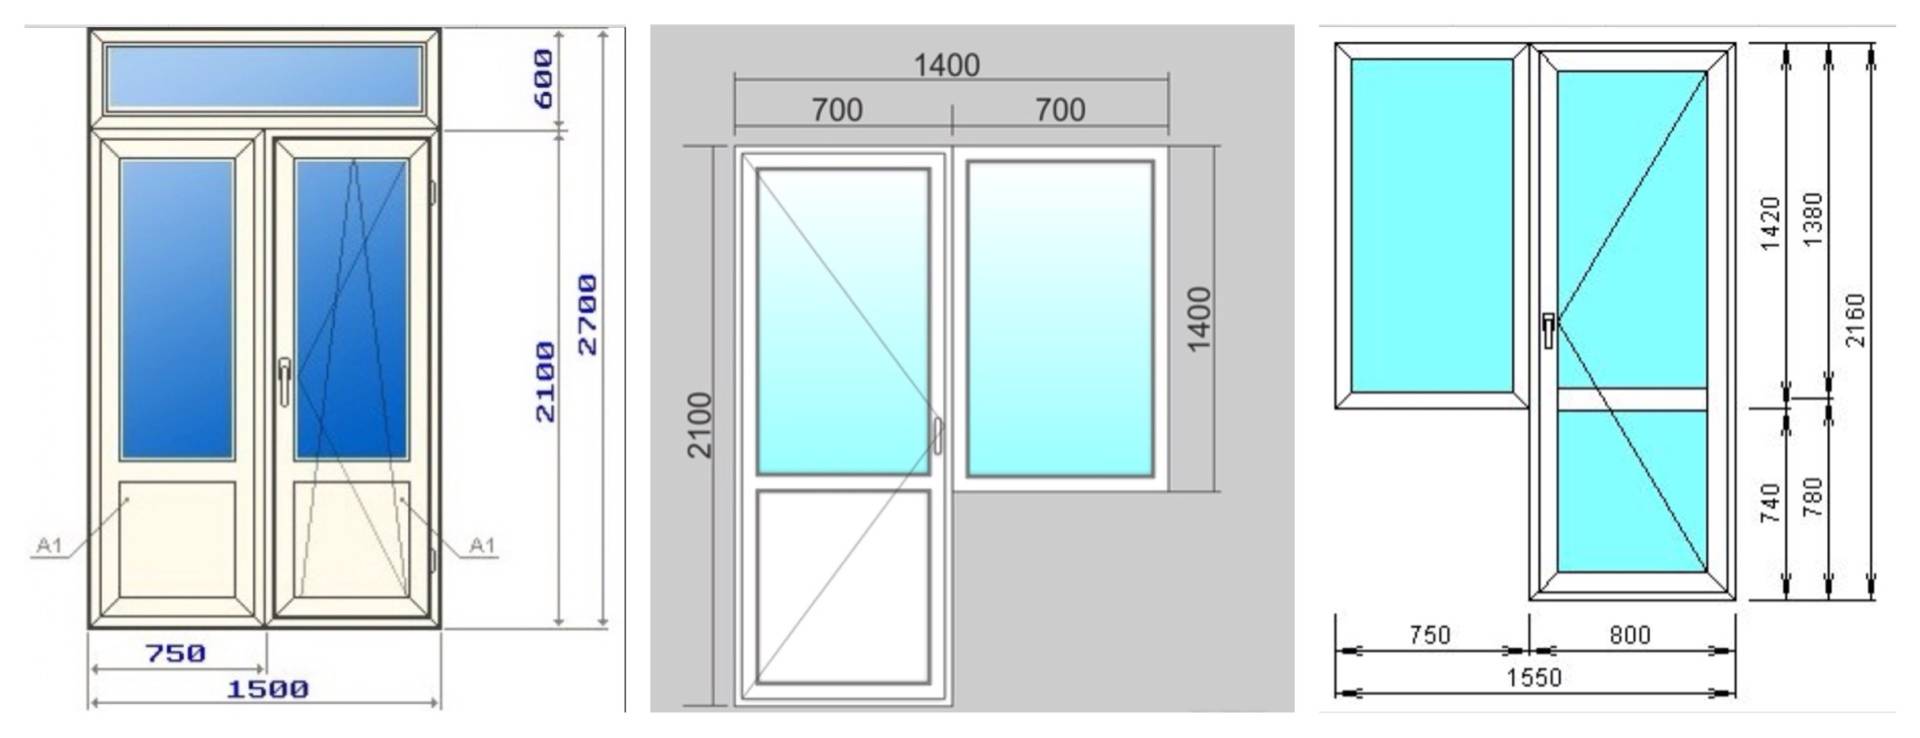 Пластиковые двери на балкон: особенности установки. монтаж пластиковых дверей на балкон. как установить пластиковые балконные двери. виды дверей и способы установки.